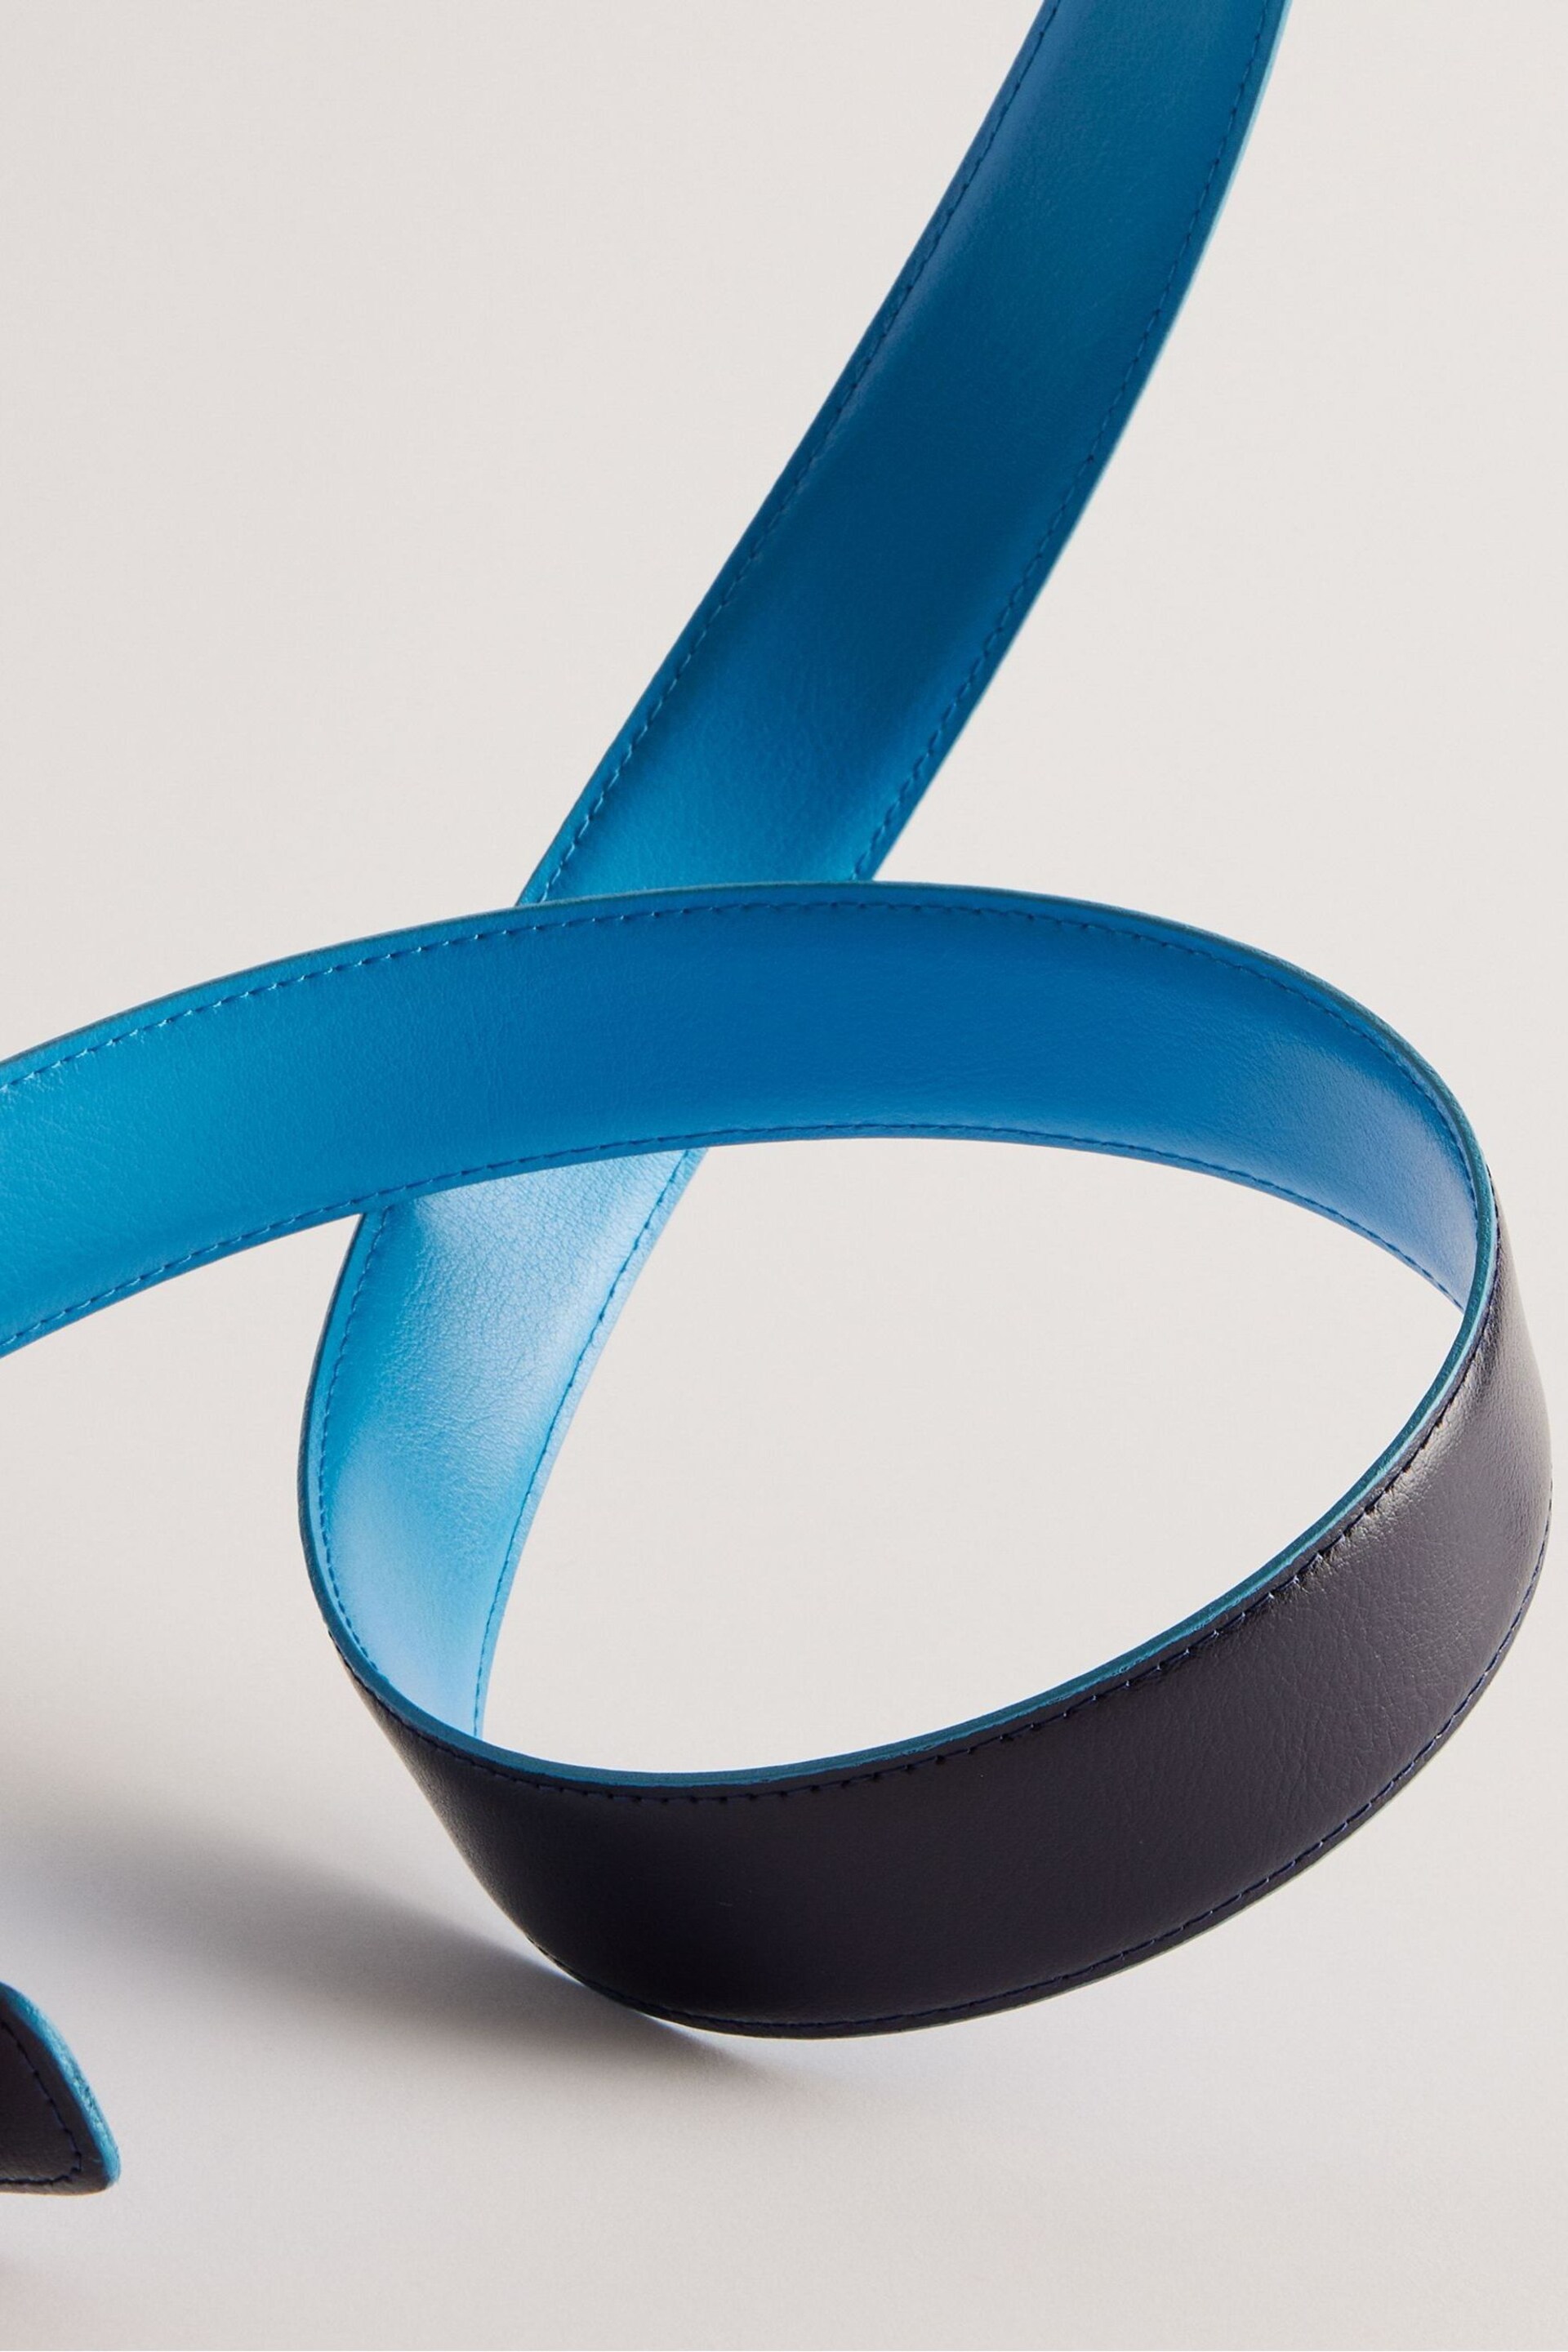 Ted Baker Blue Kacin Reversible Colour Pop Leather Belt - Image 2 of 3